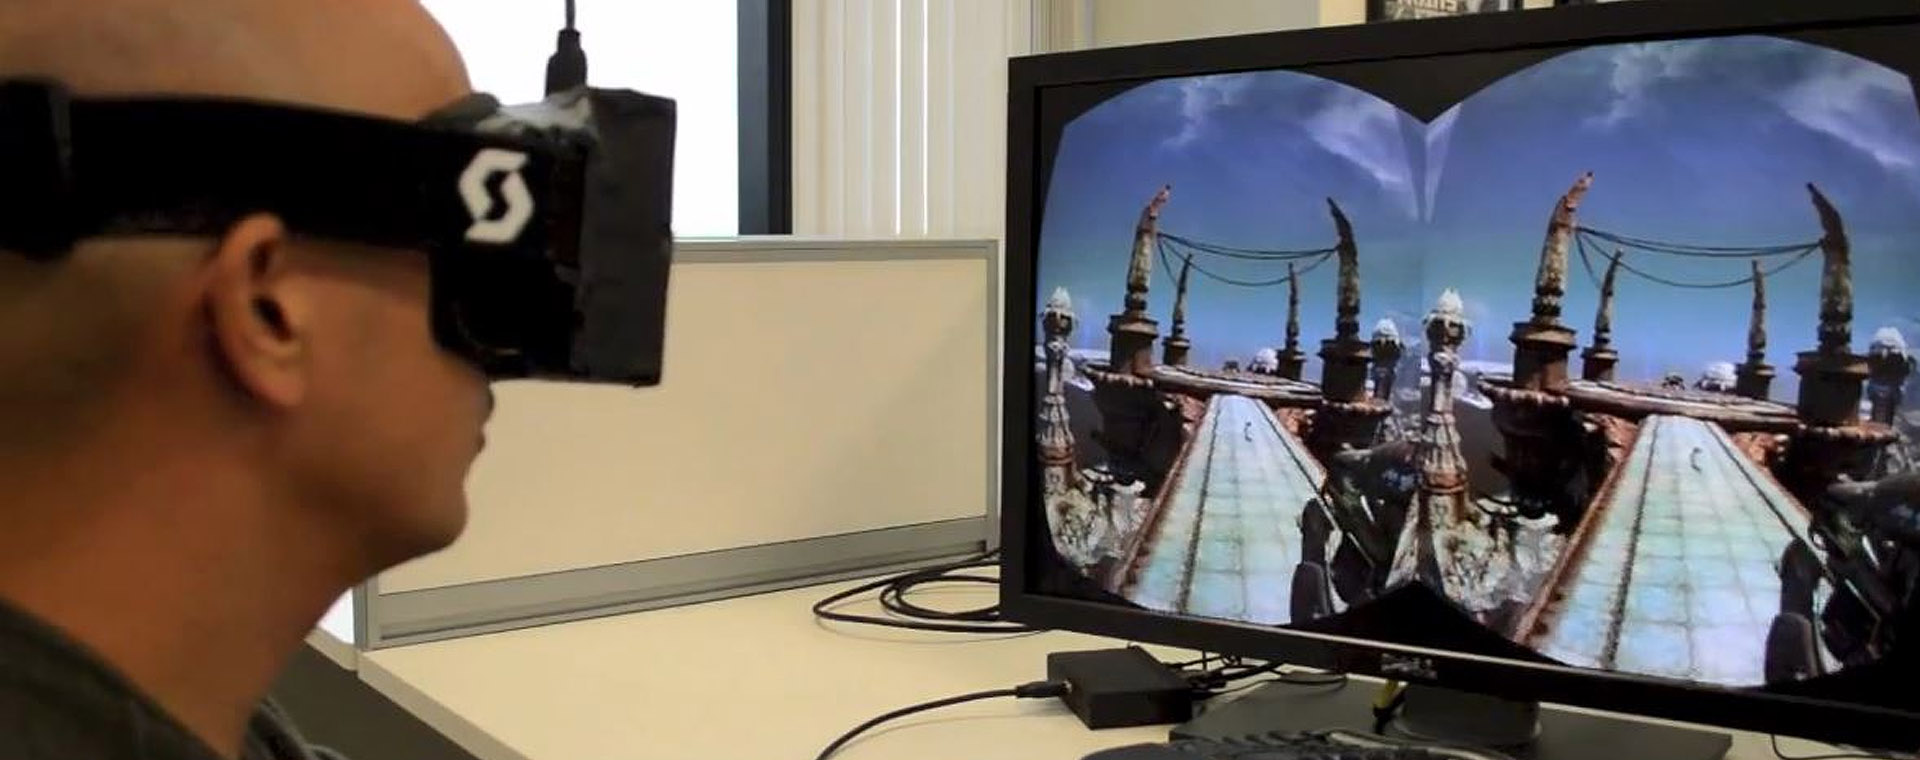 Подключаем vr к компьютеру. Очки виртуальной реальности Окулус. 3д ВР Окулус рифт. Монитор для виртуальной реальности. VR для компьютера.